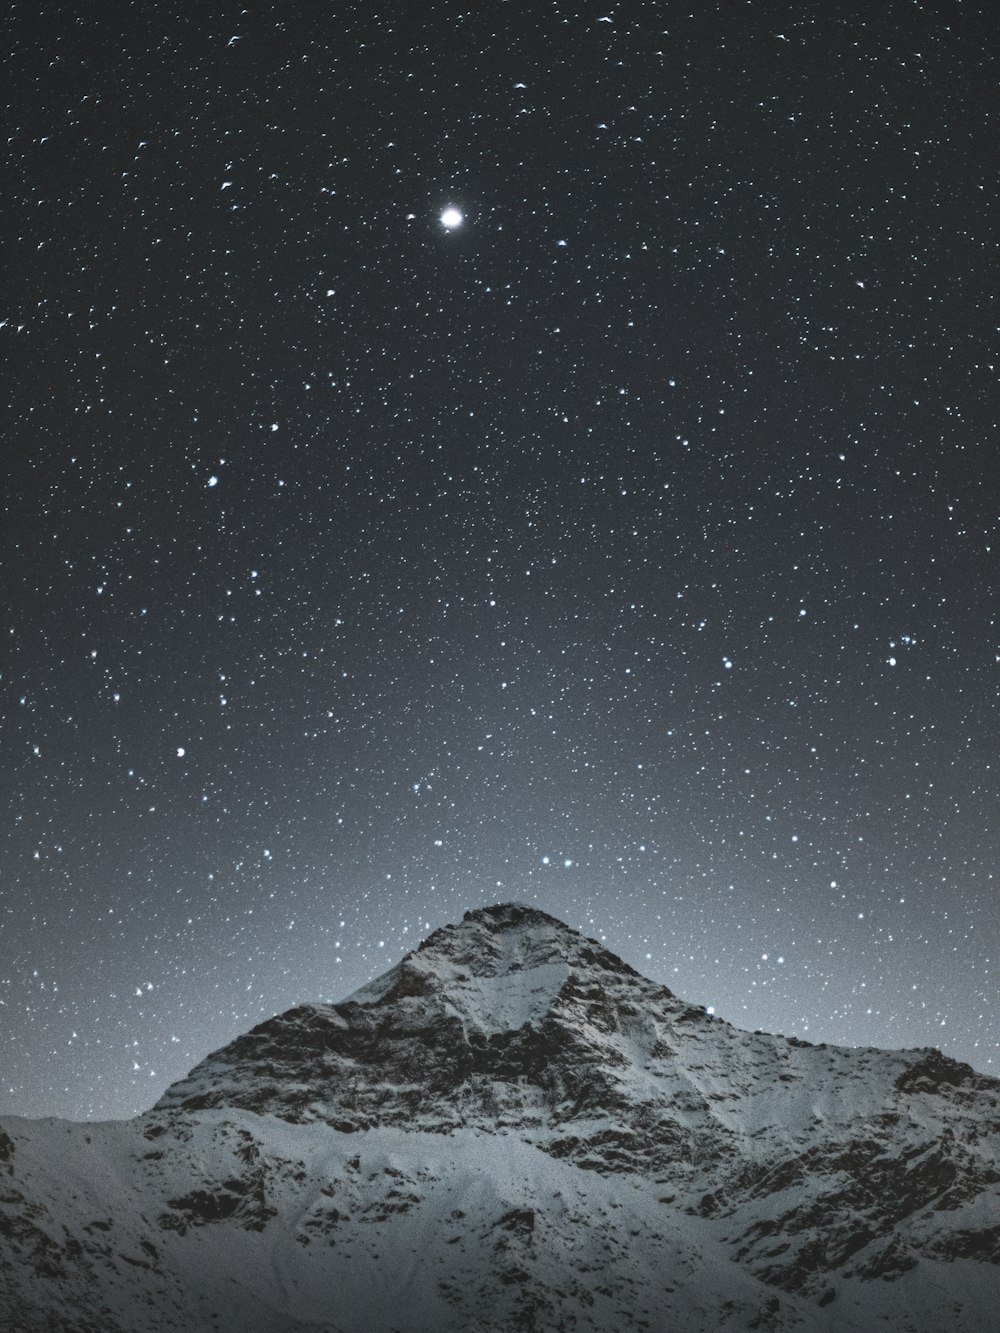 montagna innevata sotto la notte stellata